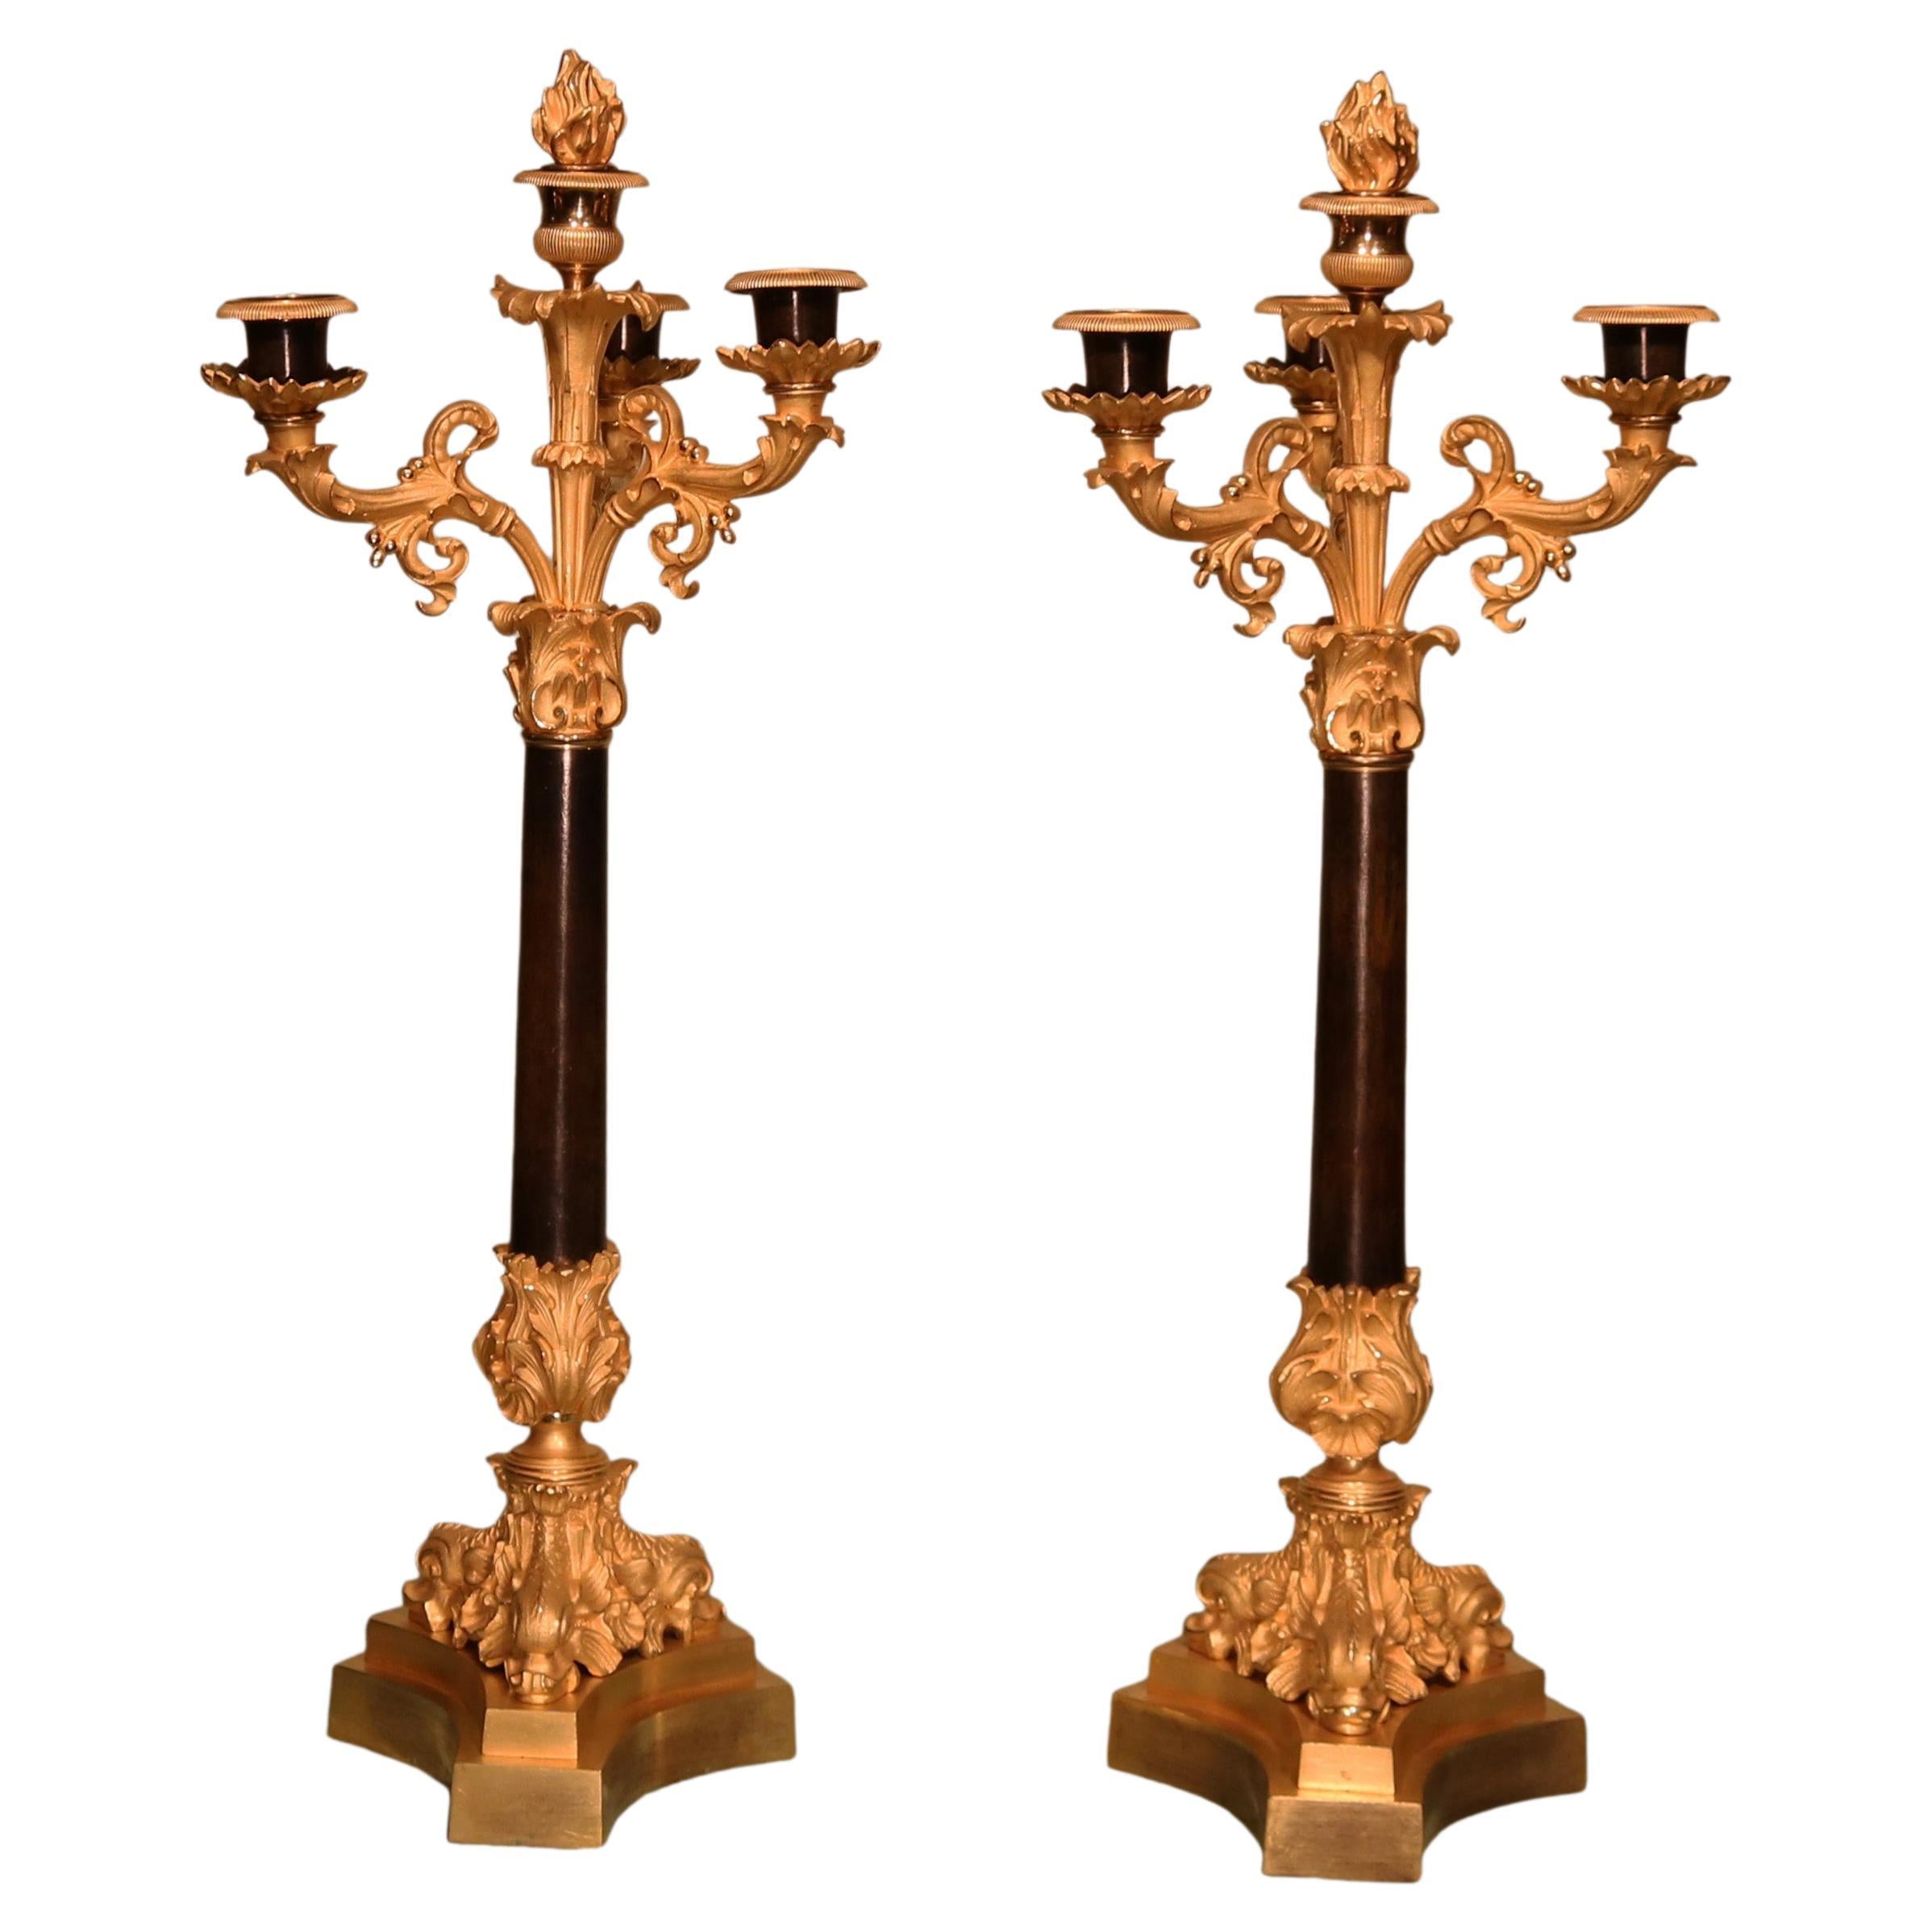 Ein feines Paar Bronze- und Goldbronze-Kandelaber aus dem 19. Jahrhundert mit 4 Lichtern